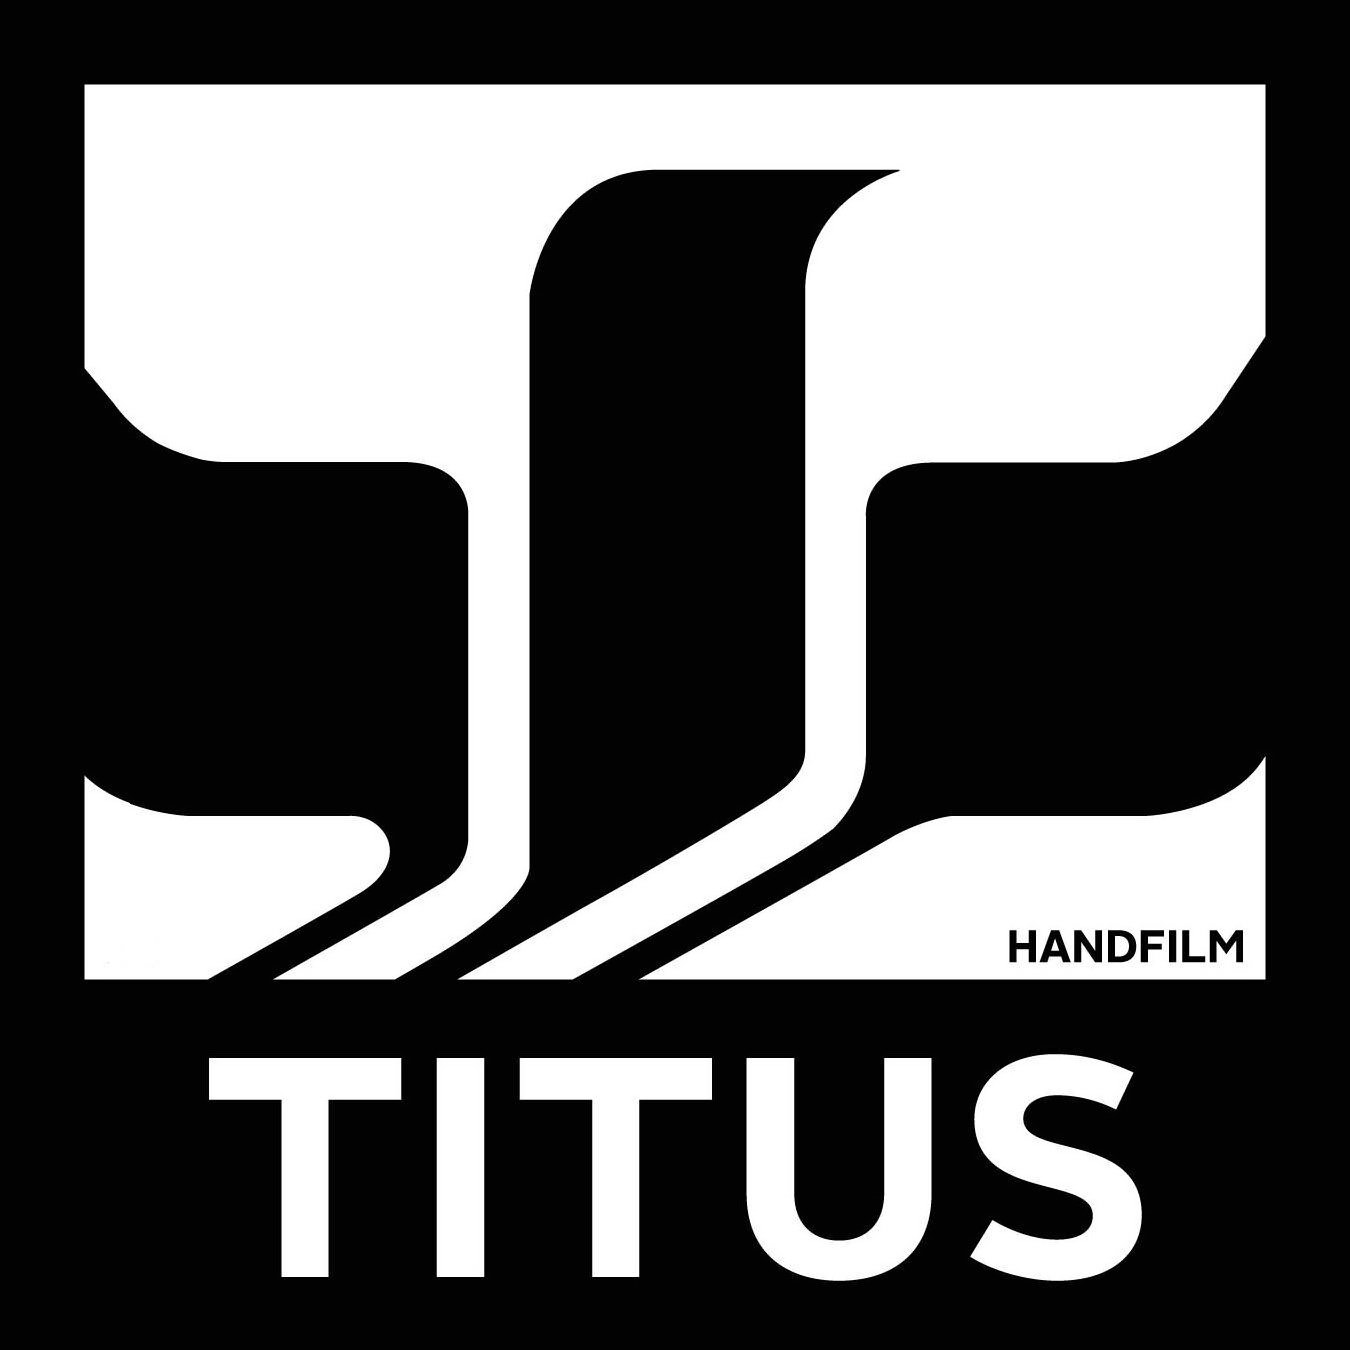 TITUS HANDFILM